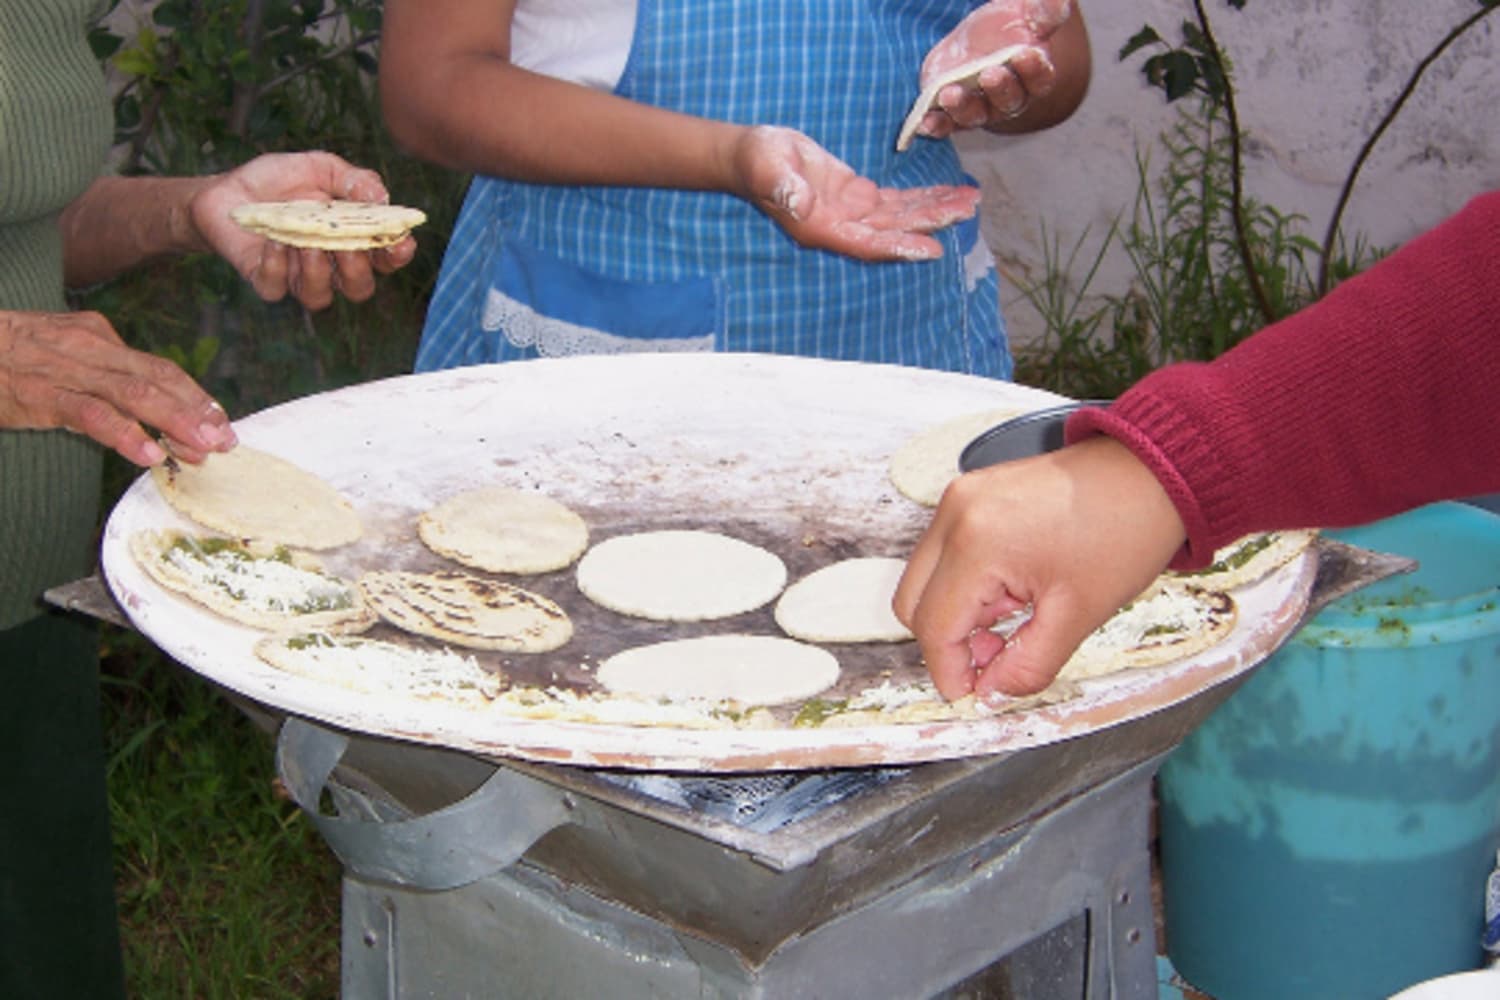 Comal para hacer tortillas, pupusas, y crepas - Waring Commercial 